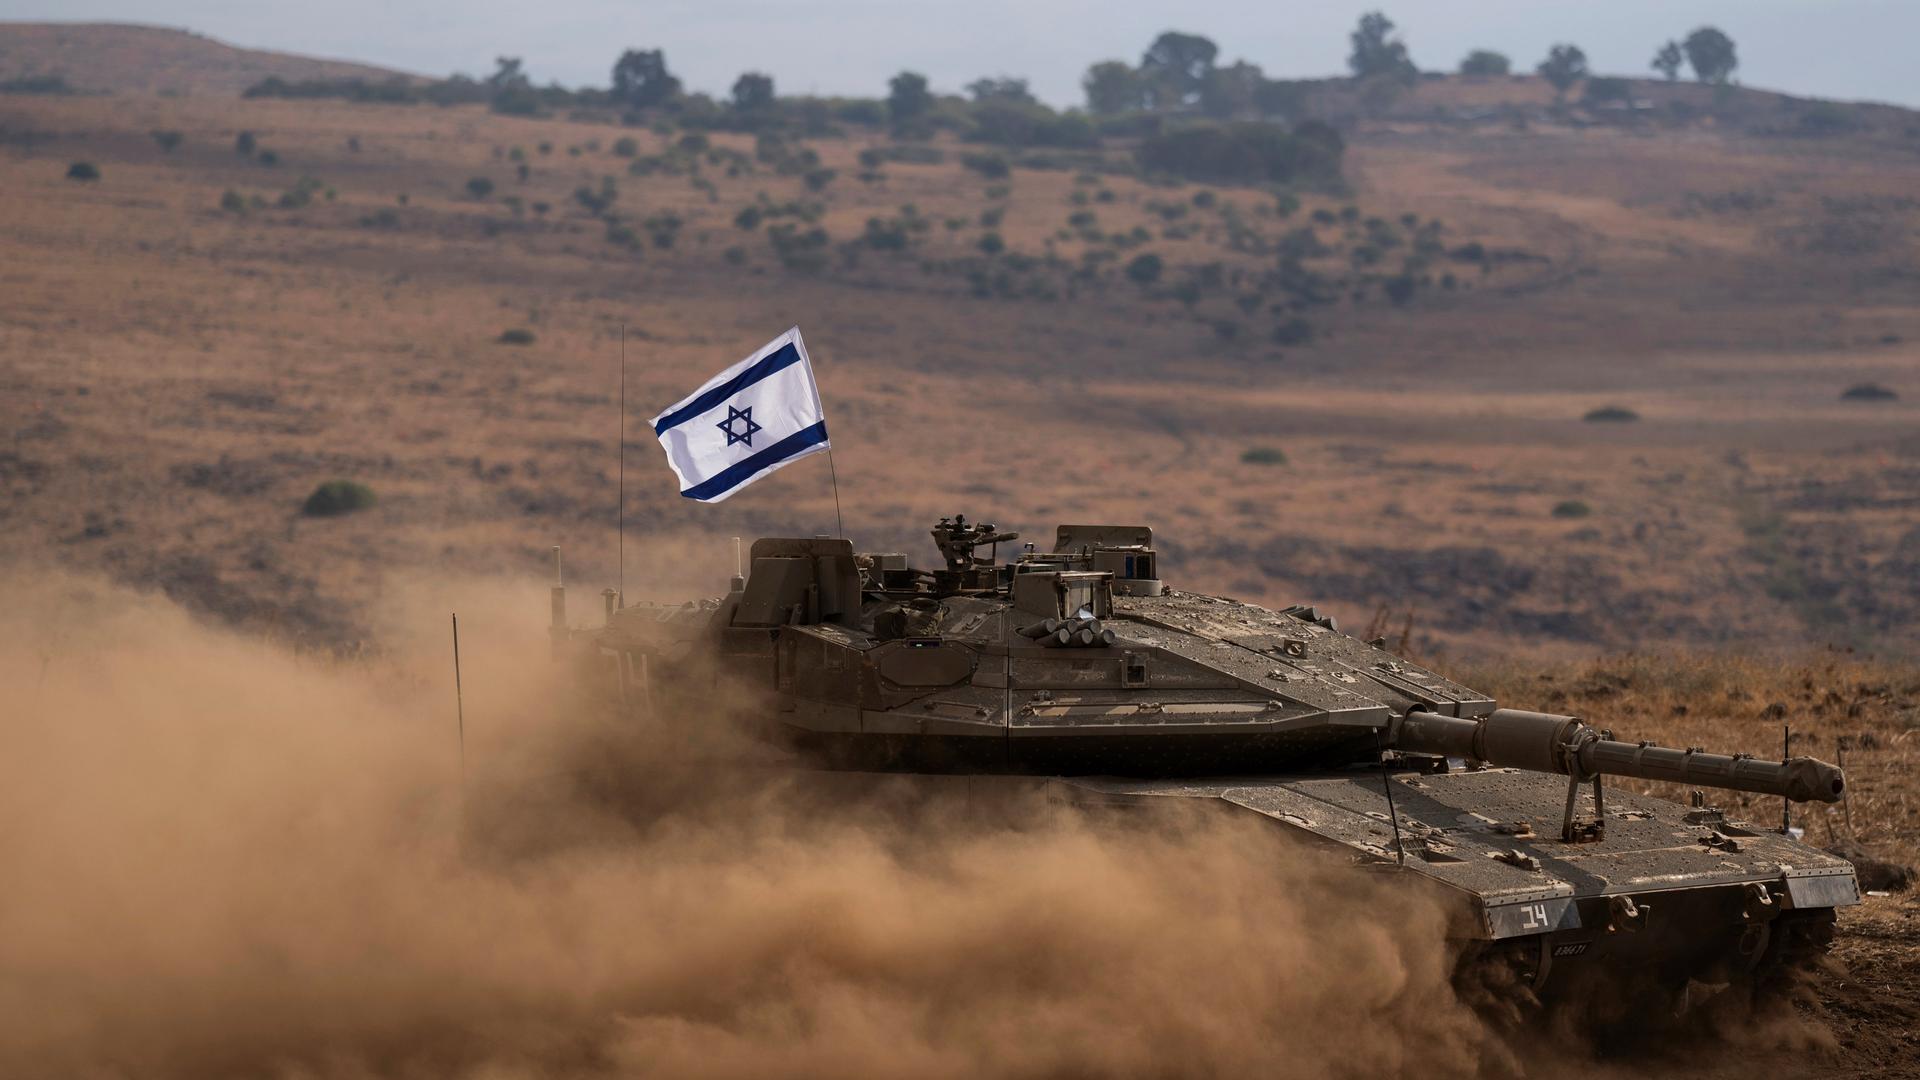 Der Panzer mit einer israelischen Flagge auf dem Dach fährt durch eine braune hügelige Ebene und wirbelt Staub auf.